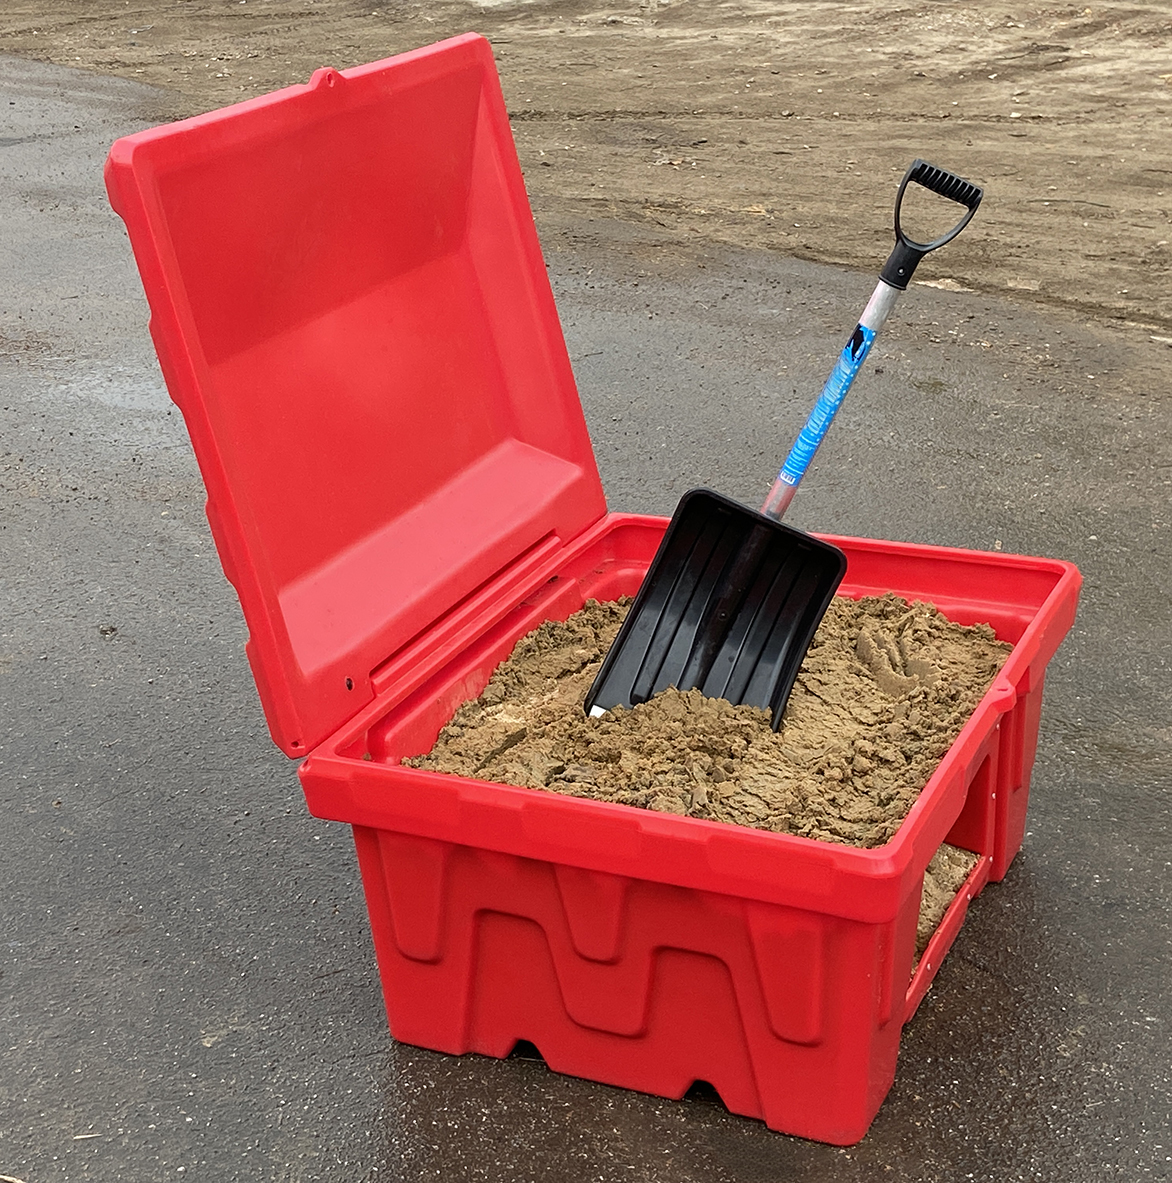 Пластиковый пожарный ящик для песка, реагентов, химикатов и сыпучих субстанций фото 1